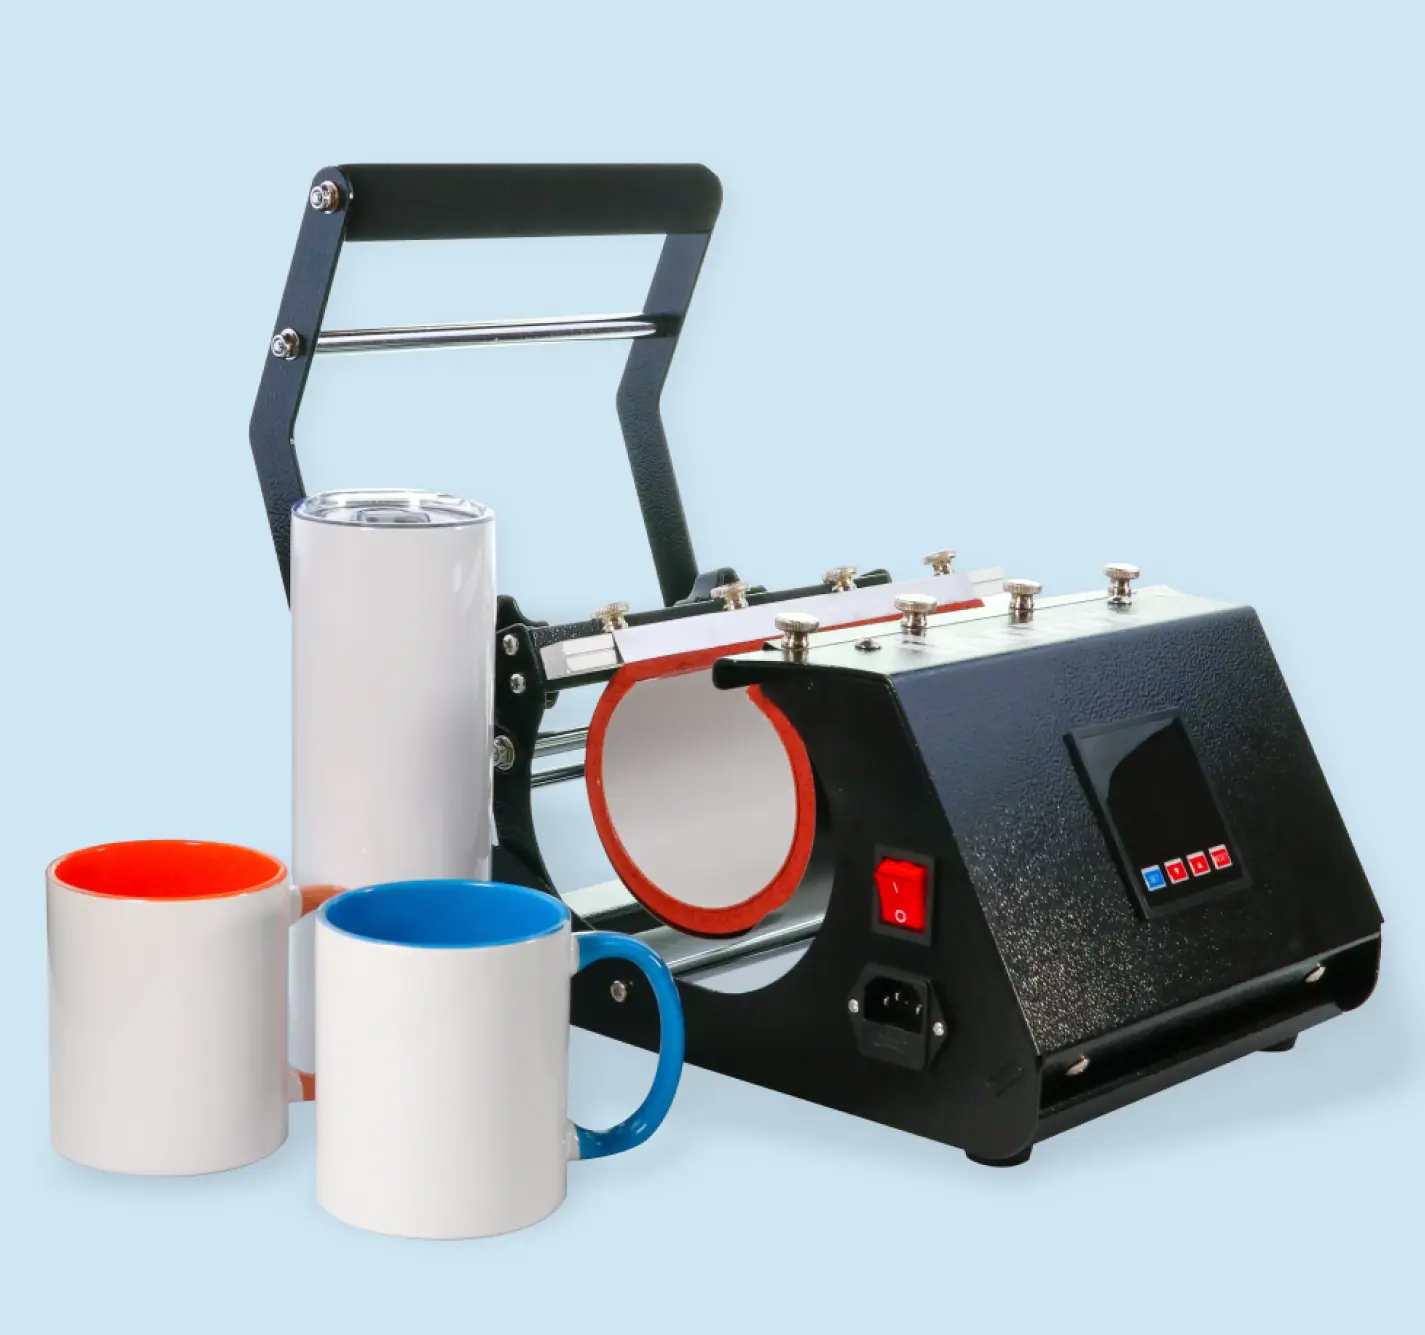 iKonix mug heat press can be used with 11 oz, 15 oz, and 16 oz mugs